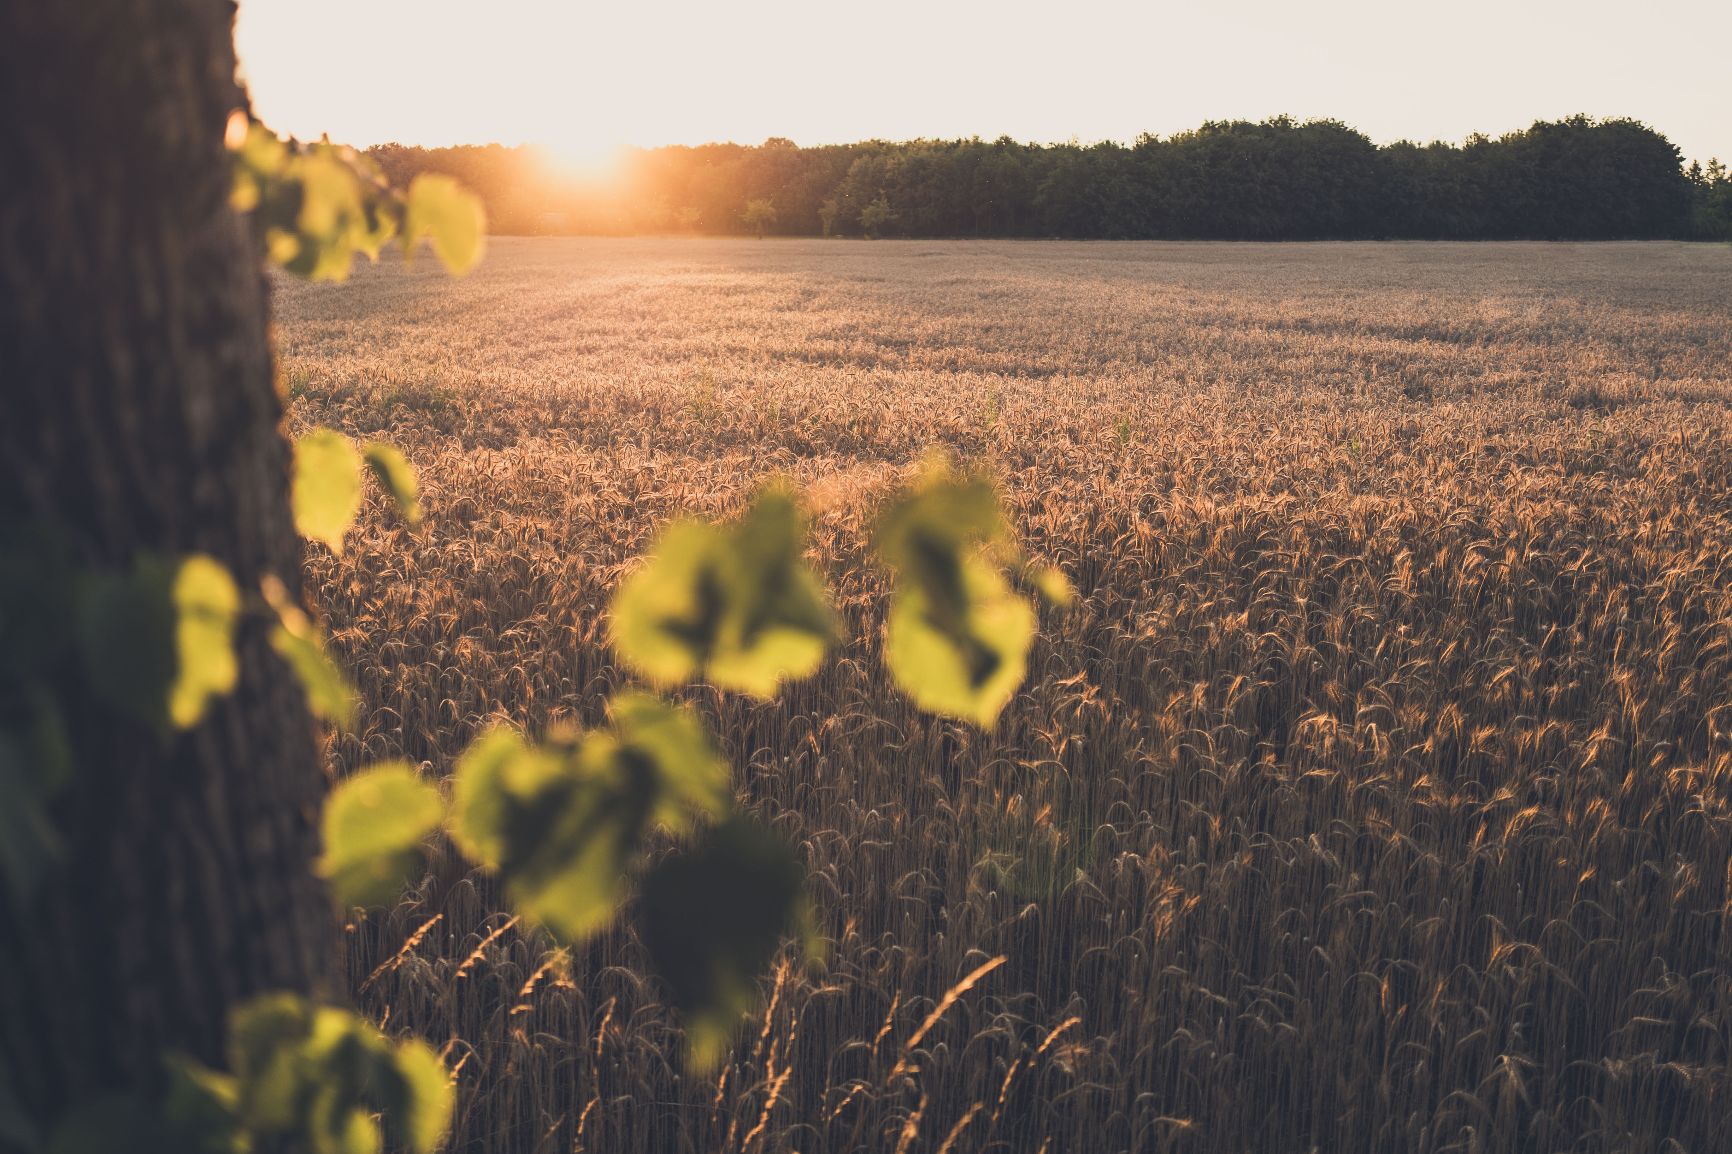 Das Bild zeigt ein weites Kornfeld mit reifen, goldenen Weizenähren, die im Sonnenuntergang leuchten. Im Vordergrund sind unscharfe Bätter zu sehen, im Hintergrund geht die Sonne zwischen Bäumen unter und taucht die Szene in ein warmes, goldenes Abendlicht.